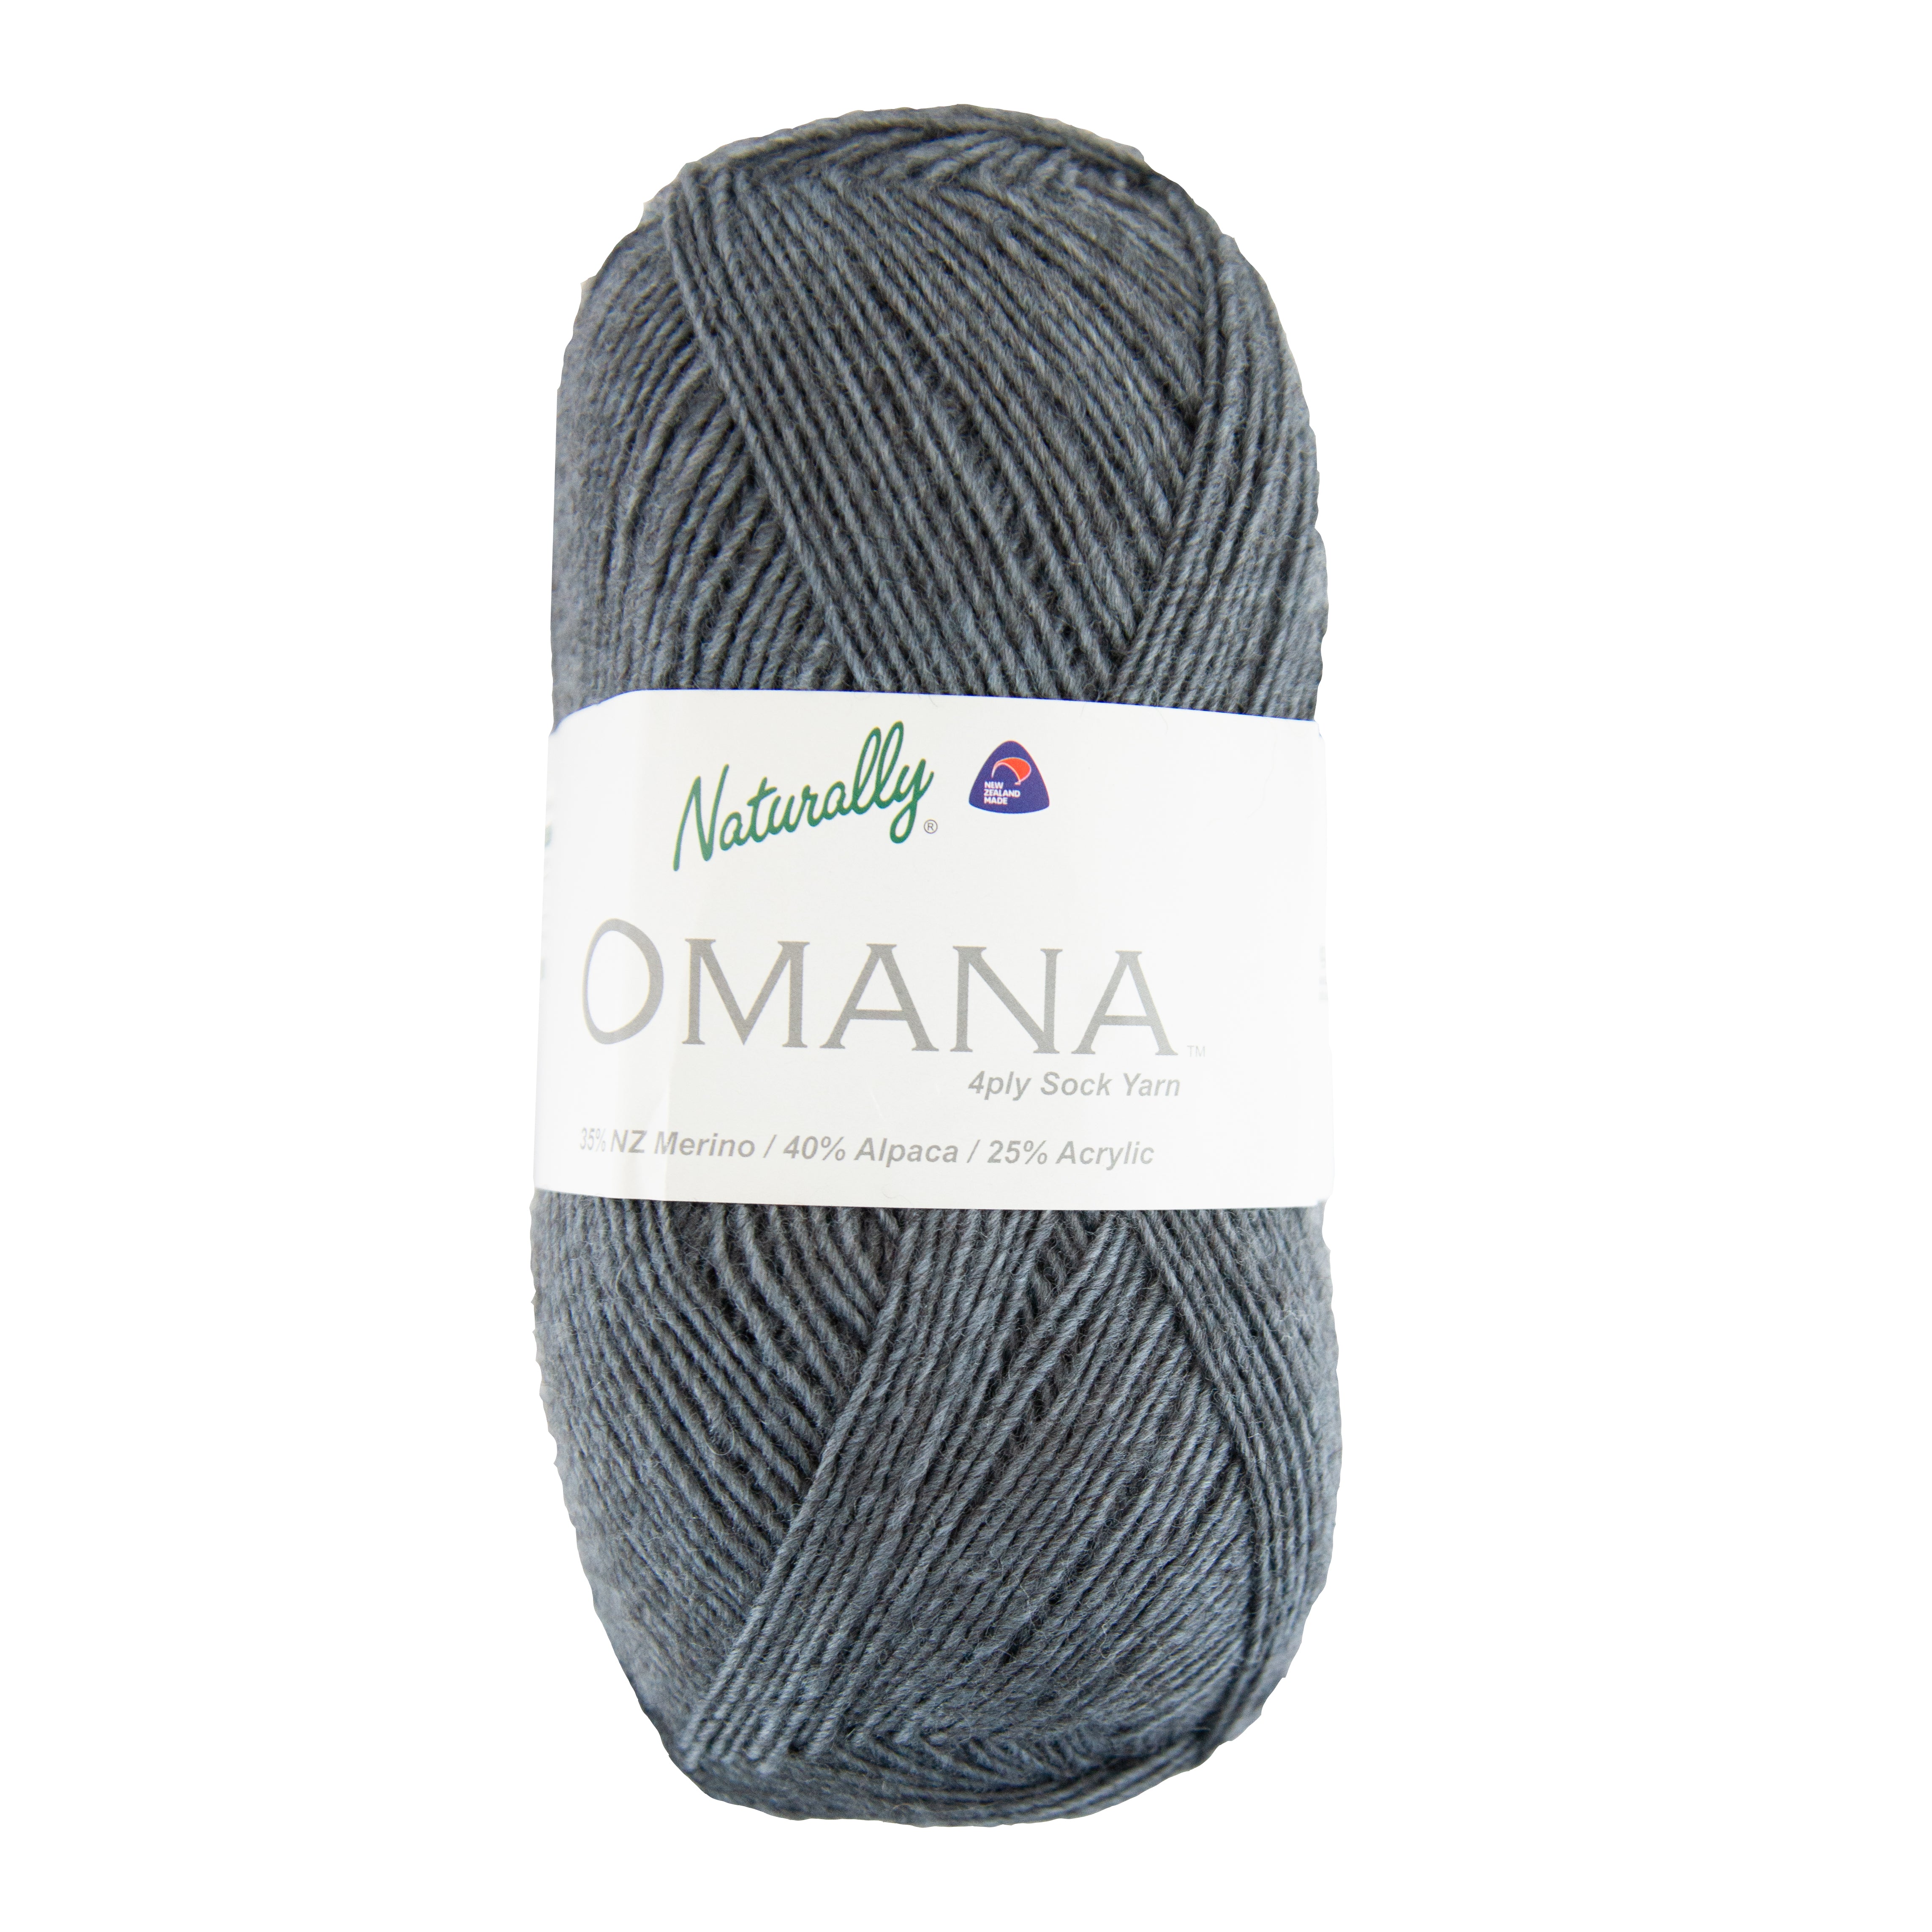 Omana 4 ply Sock Yarn